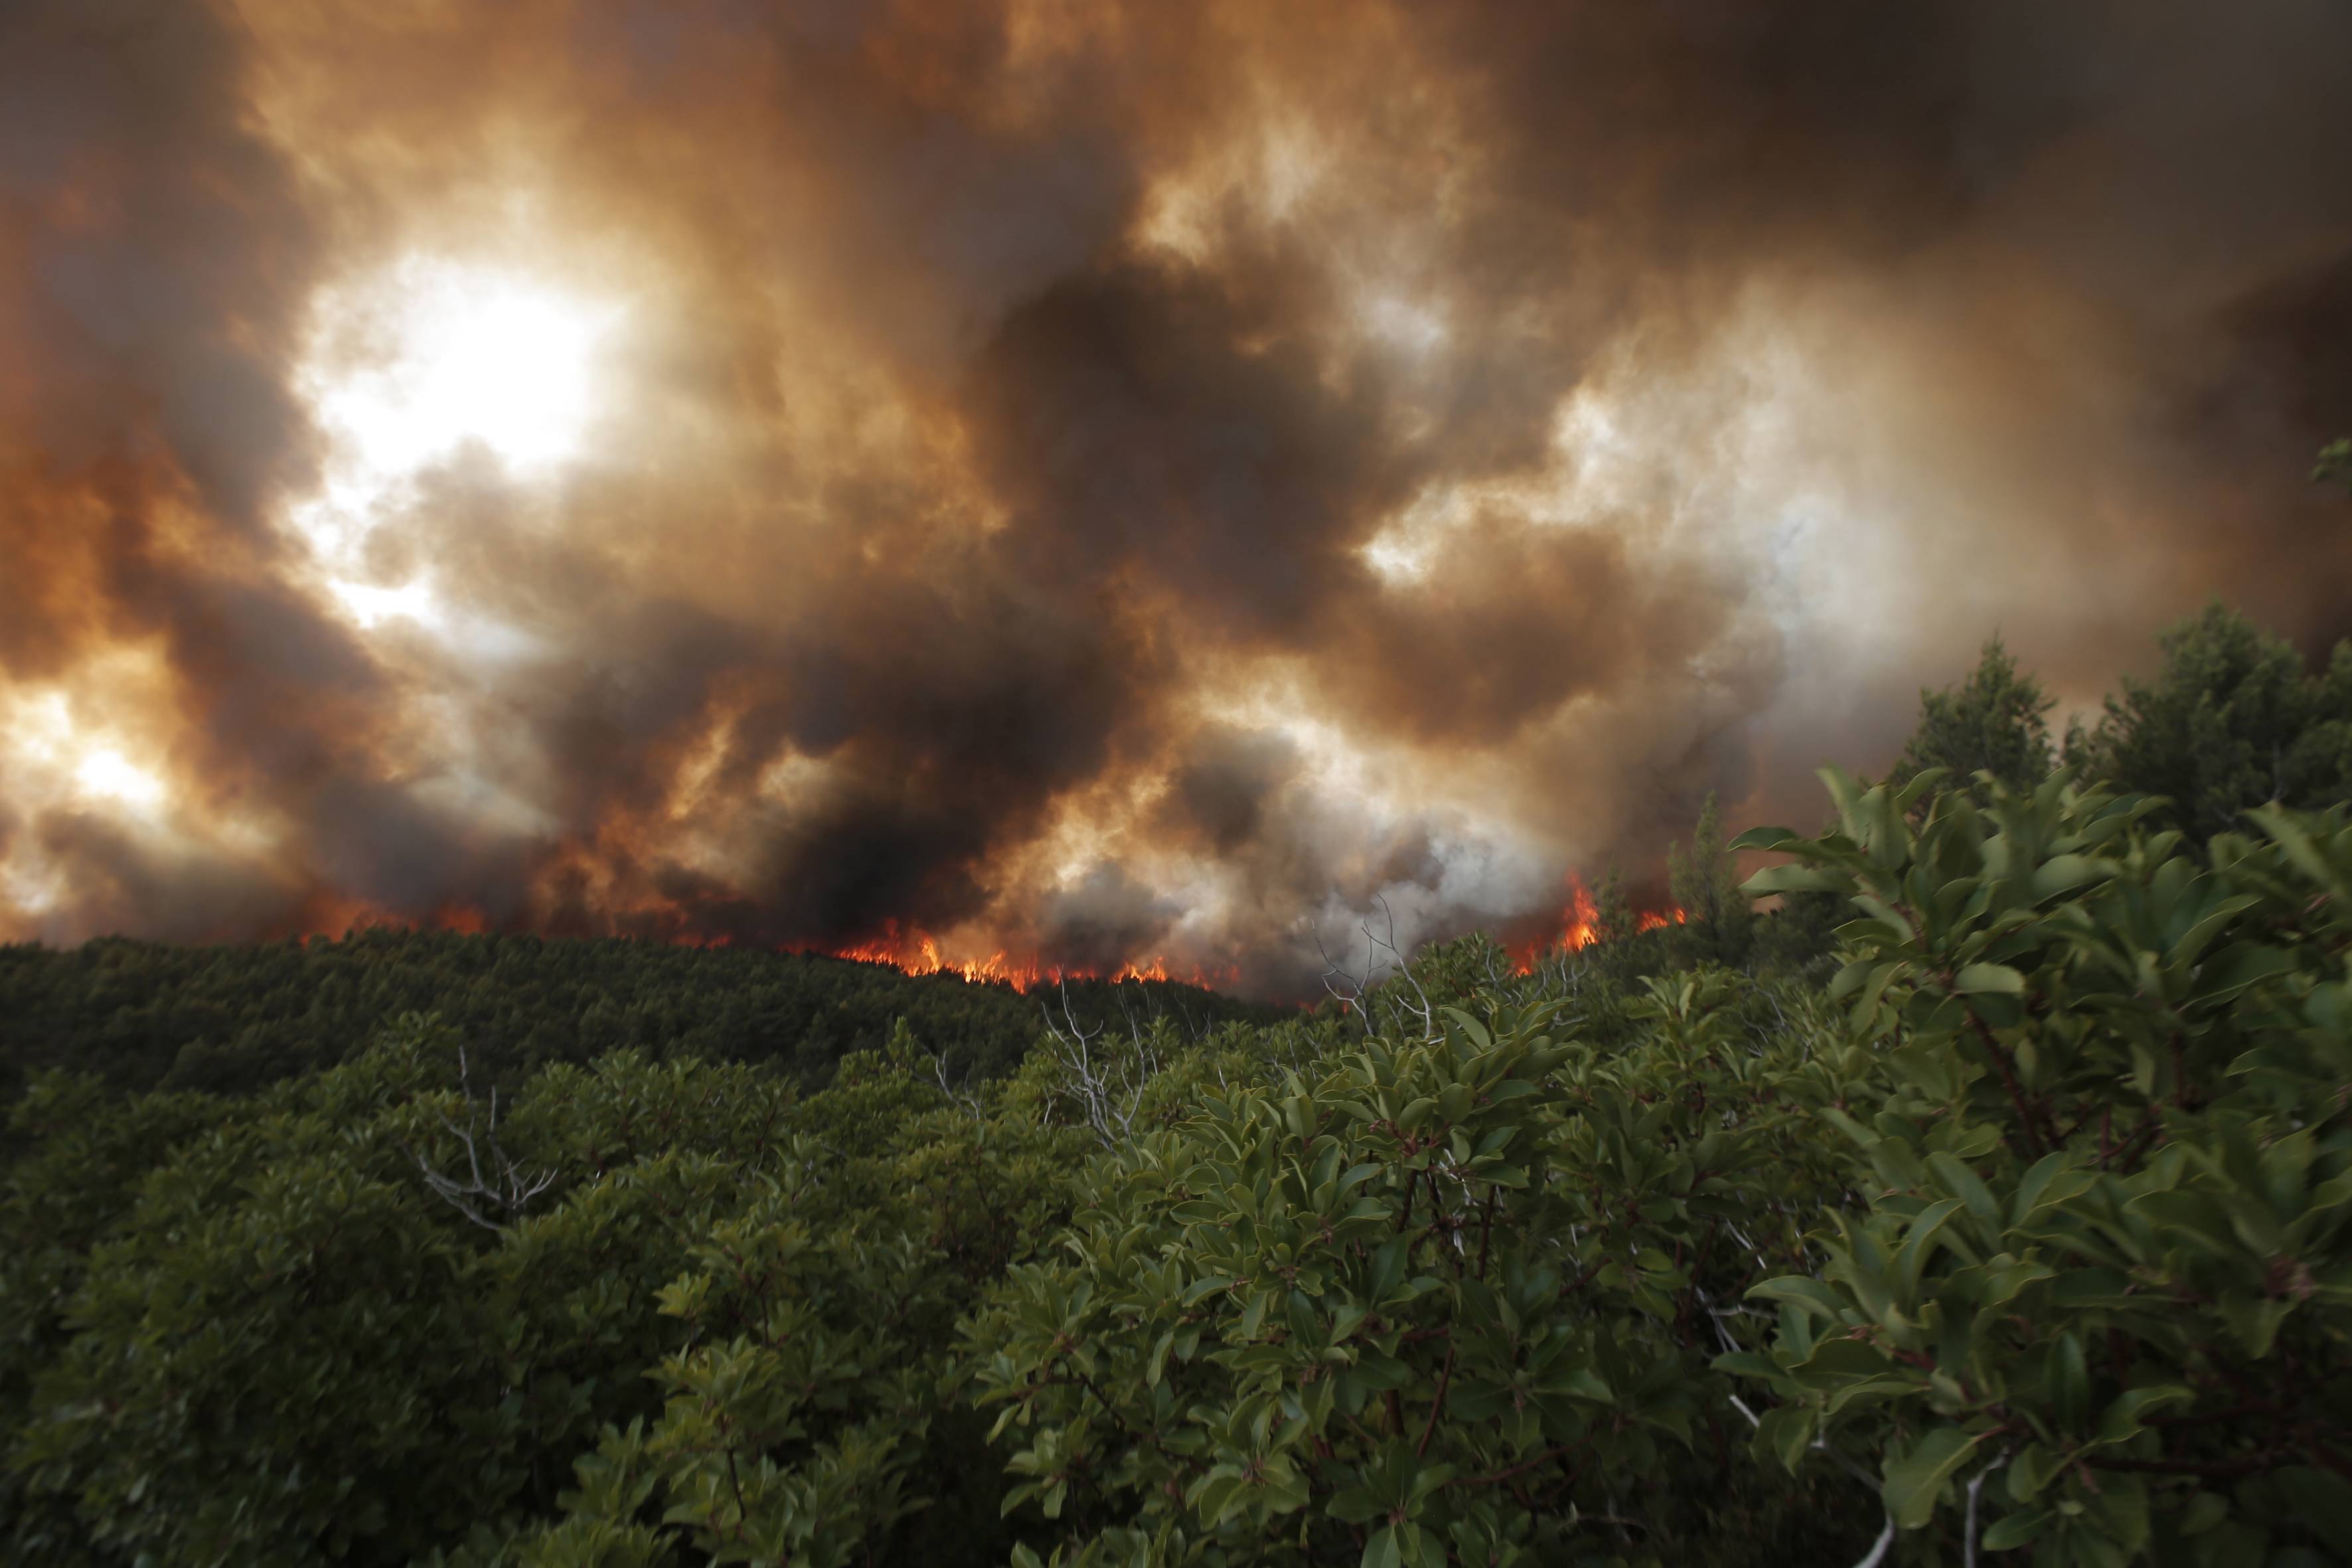 撒丁岛山火持续图片